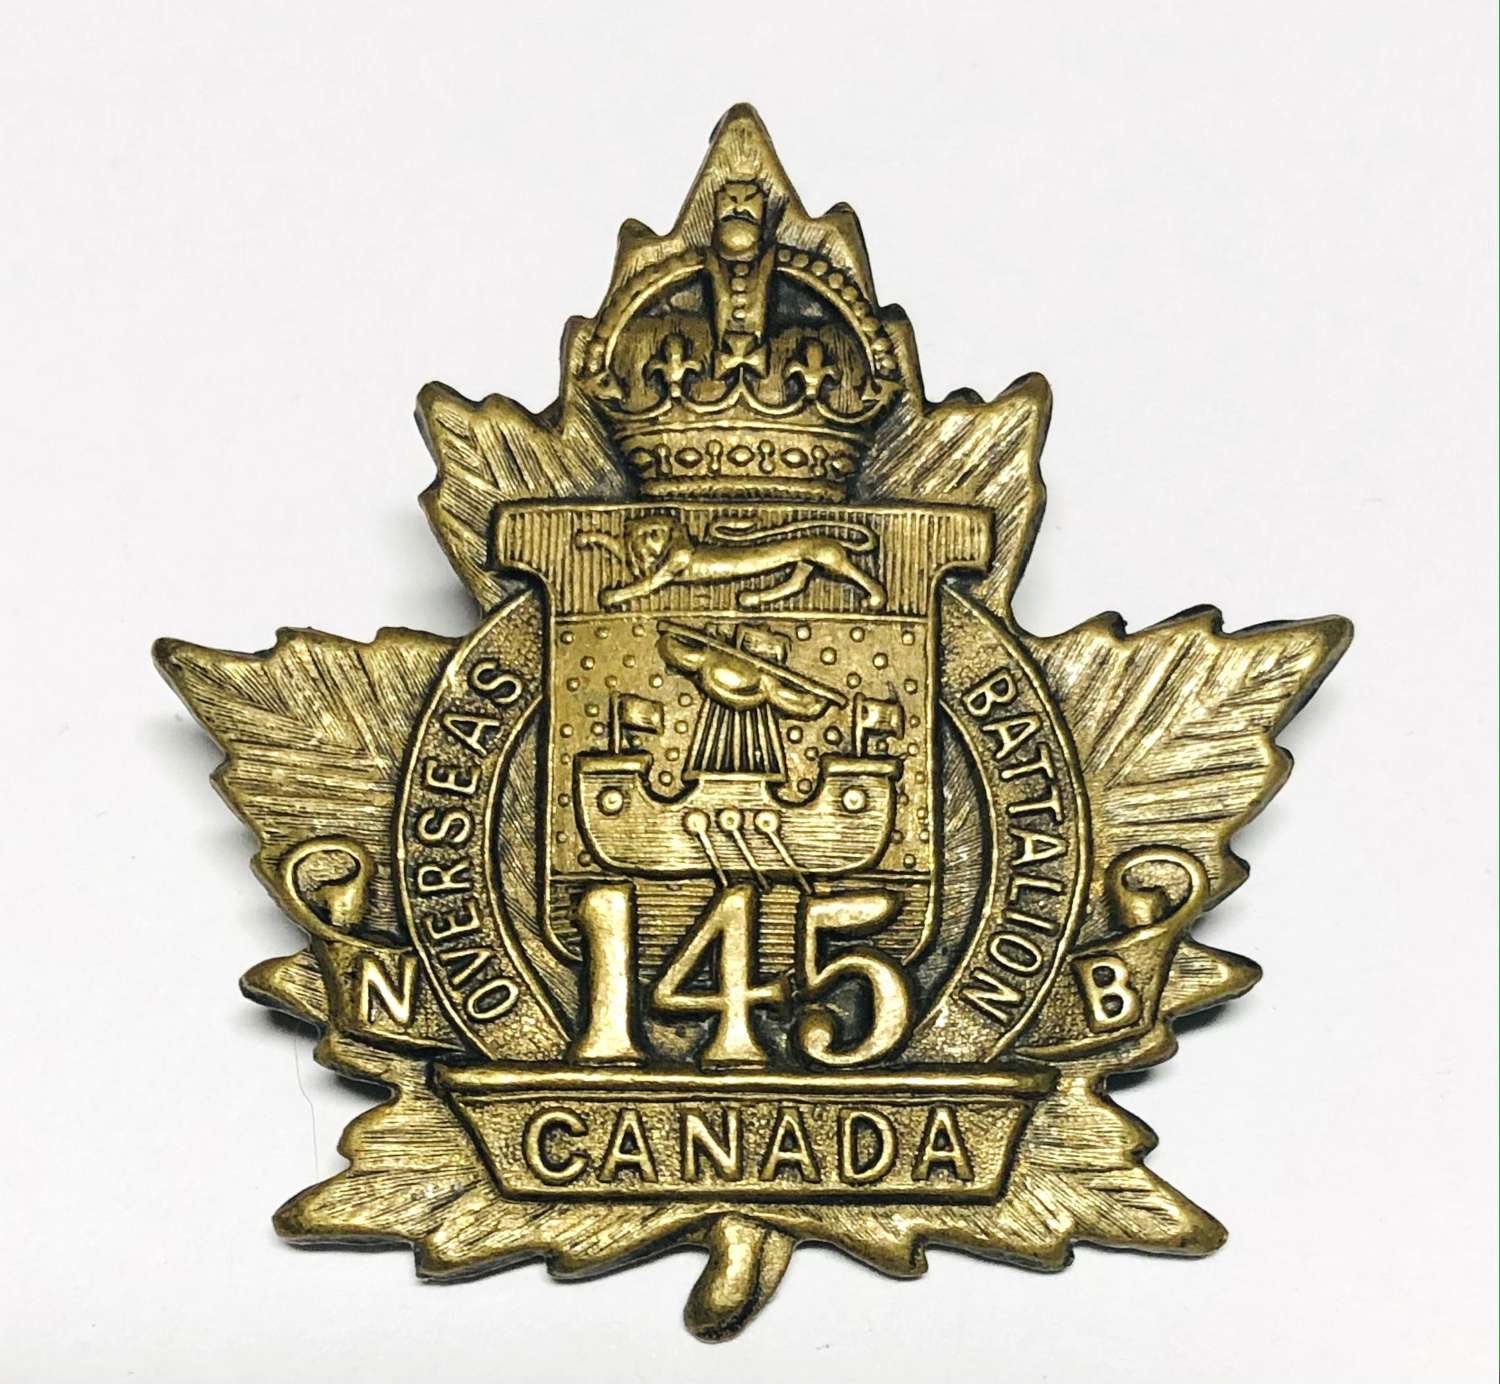 Canada 145th Battalion (Moncton, New Brunswick) CEF WW1 cap badge